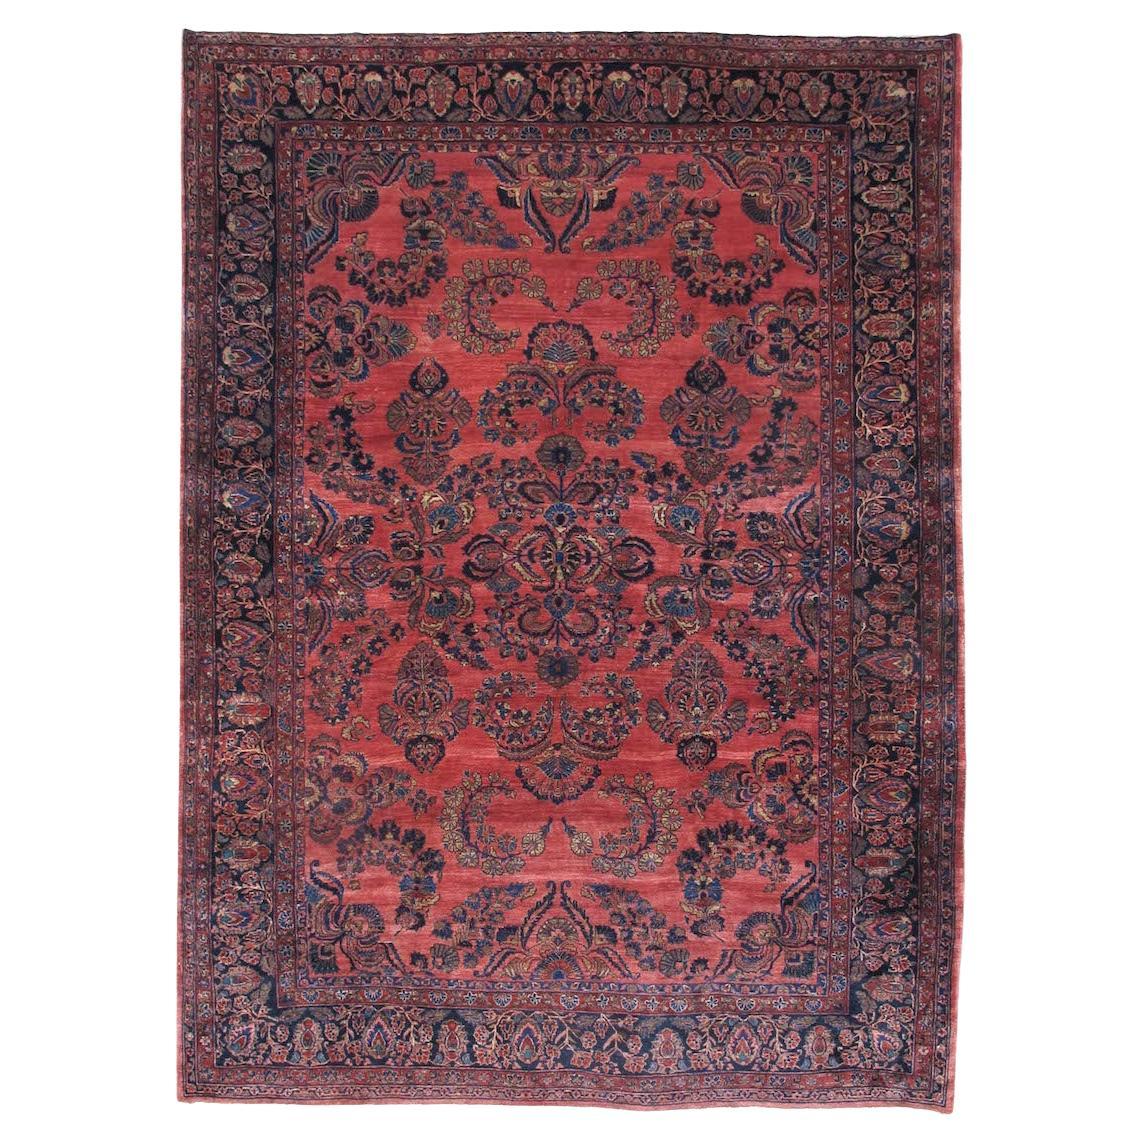 Mahajeran Sarouk Carpet, Early 20th Century